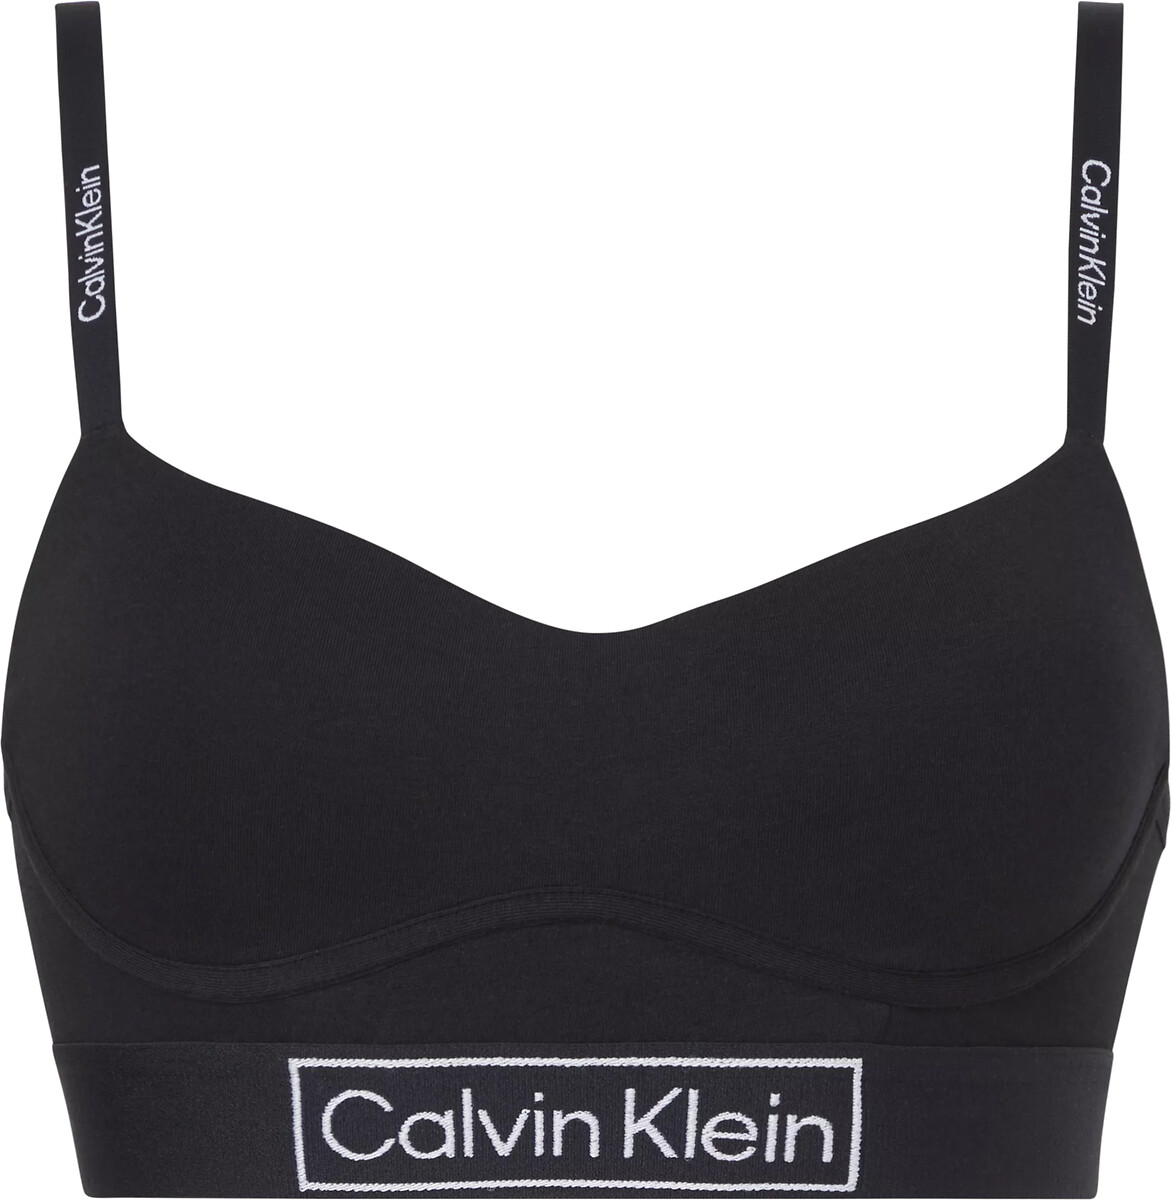 Sheer marquisette bra in cotton, black, Calvin Klein Underwear